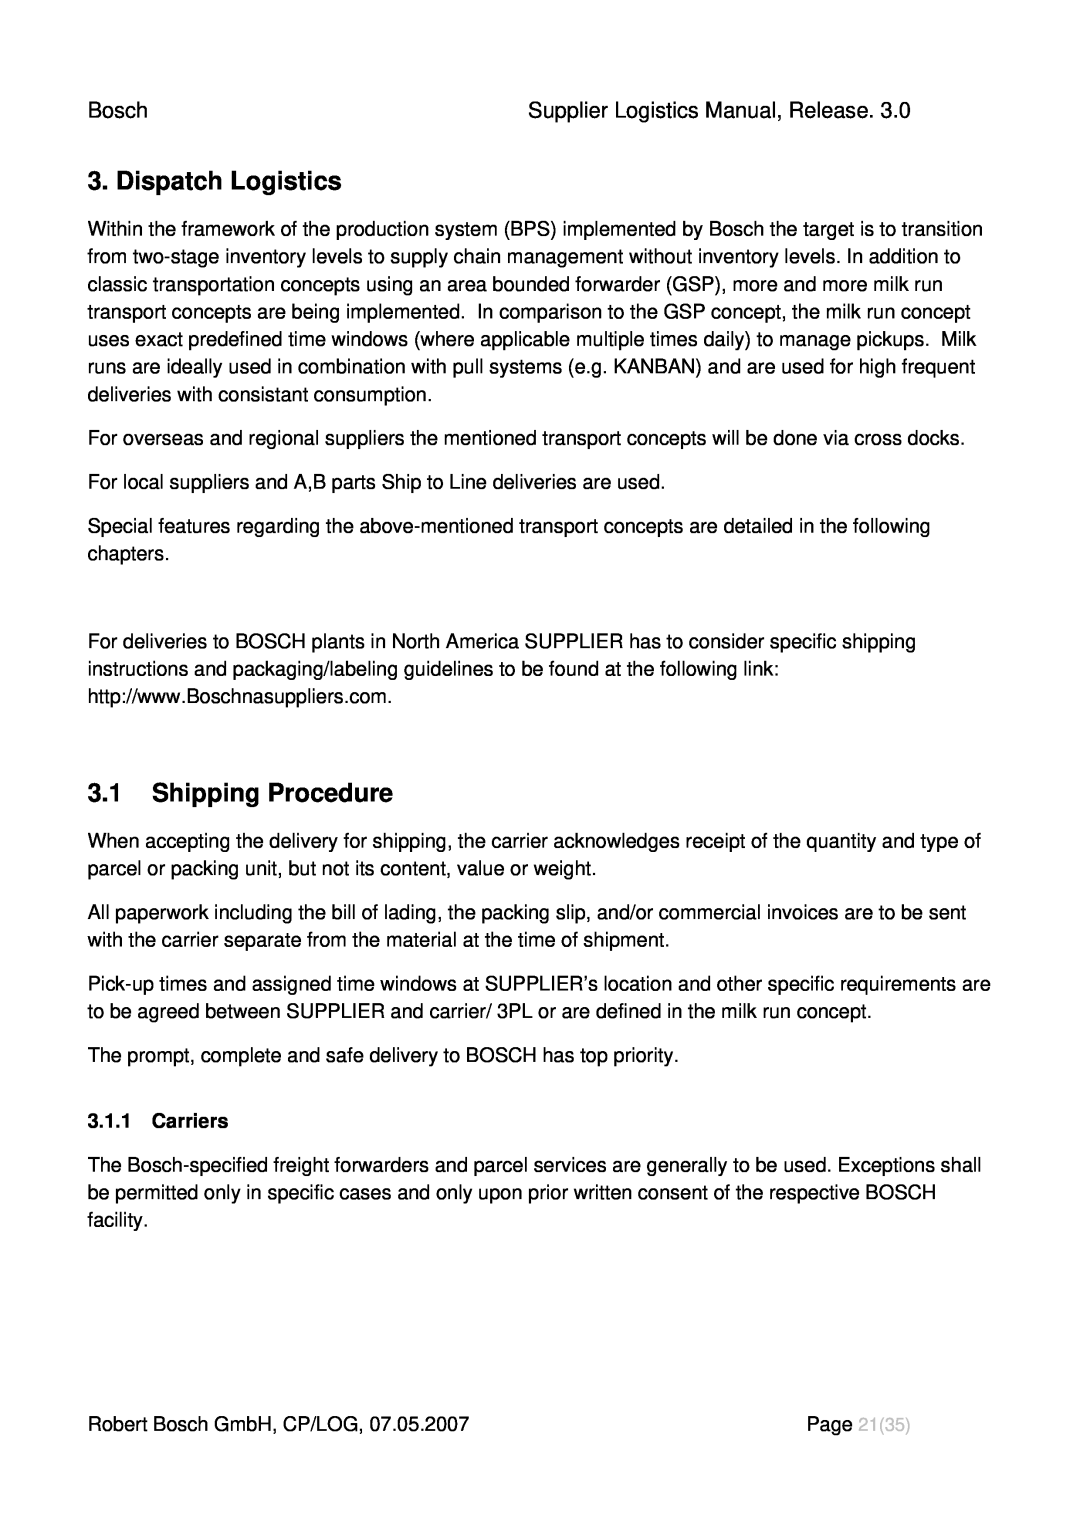 Bosch Appliances Dispatch Logistics, 3.1Shipping Procedure, 3.1.1Carriers, Bosch, Supplier Logistics Manual, Release 